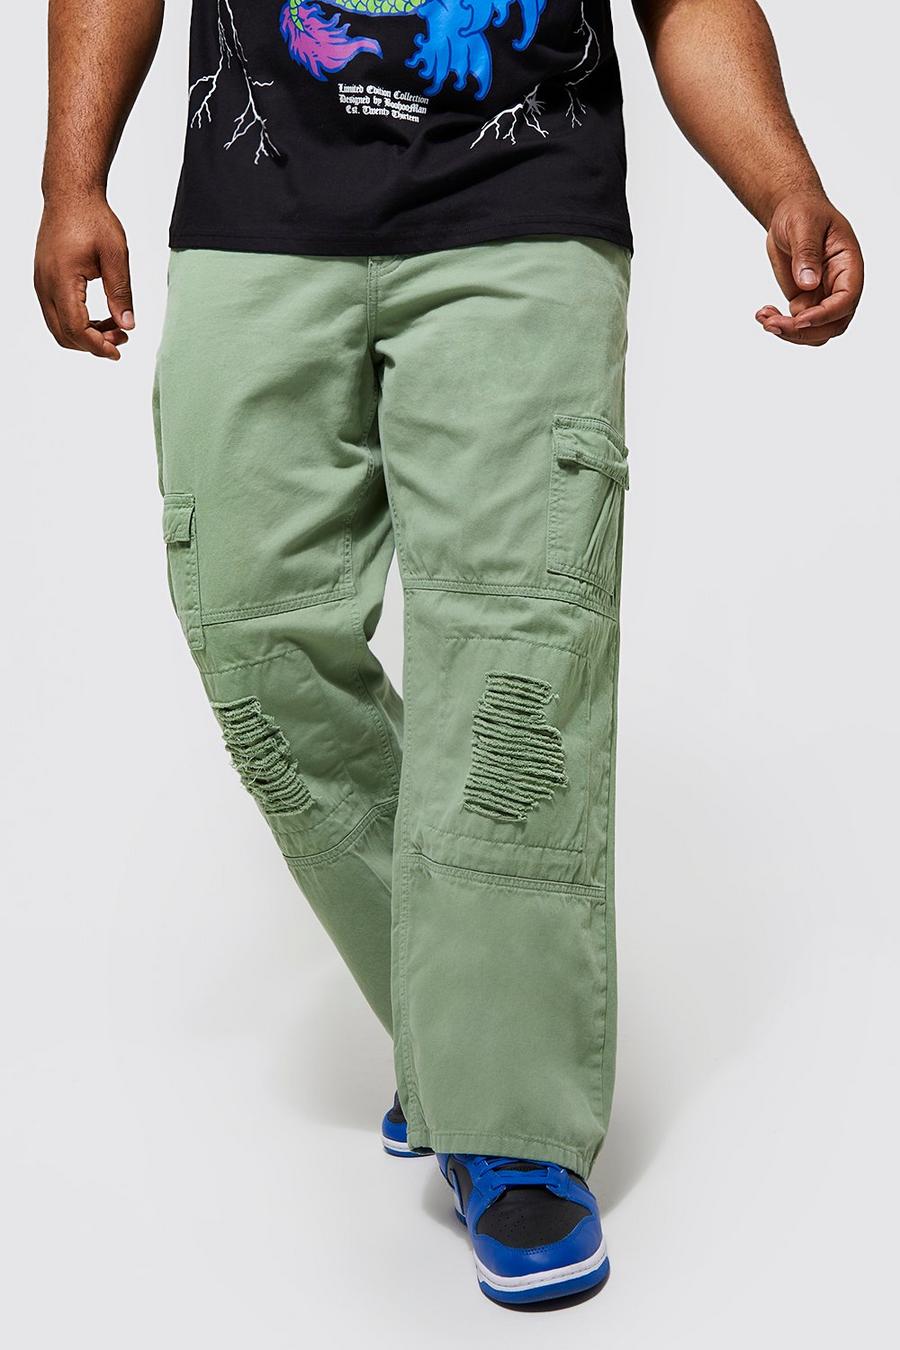 מרווה verde מכנסי דגמ'ח בגזרה ישרה עם קרעים, מידות גדולות